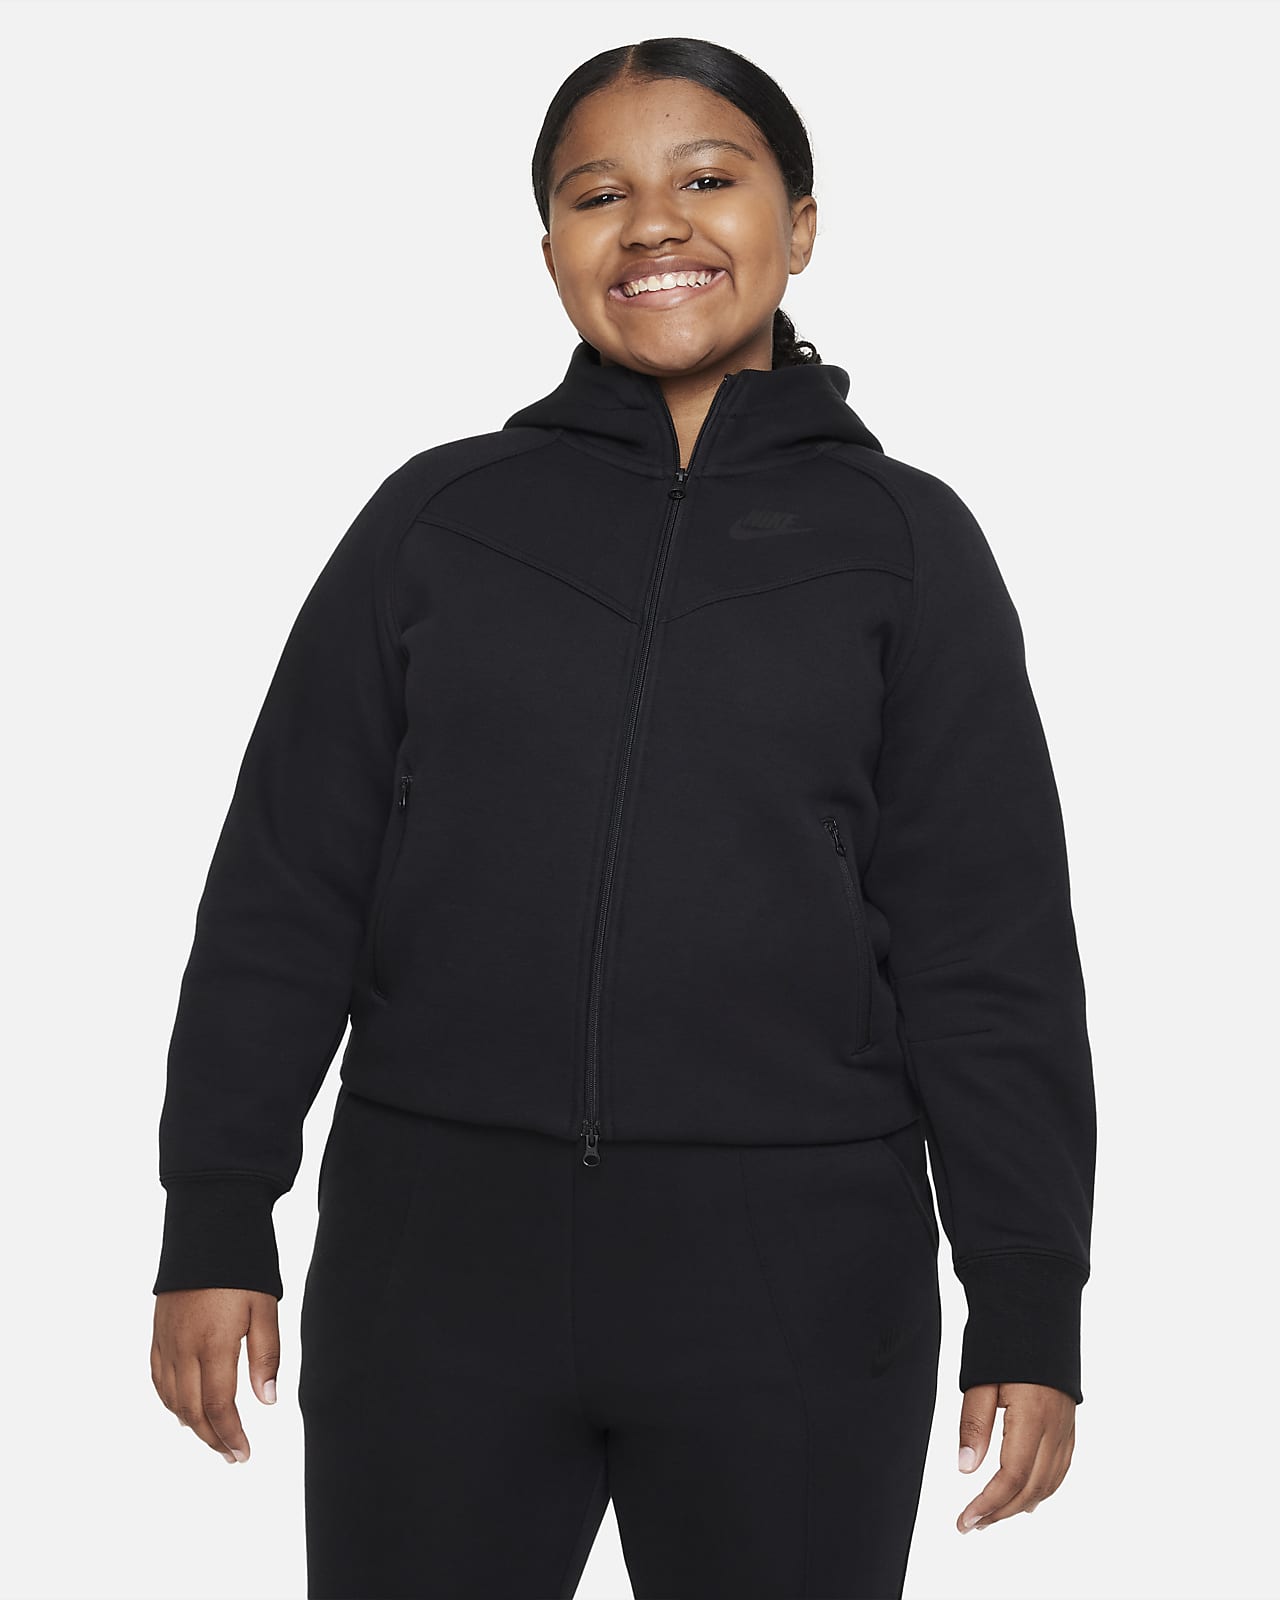 Μπλούζα με κουκούλα και φερμουάρ σε όλο το μήκος Nike Sportswear Tech Fleece για μεγάλα κορίτσια (μεγαλύτερο μέγεθος)